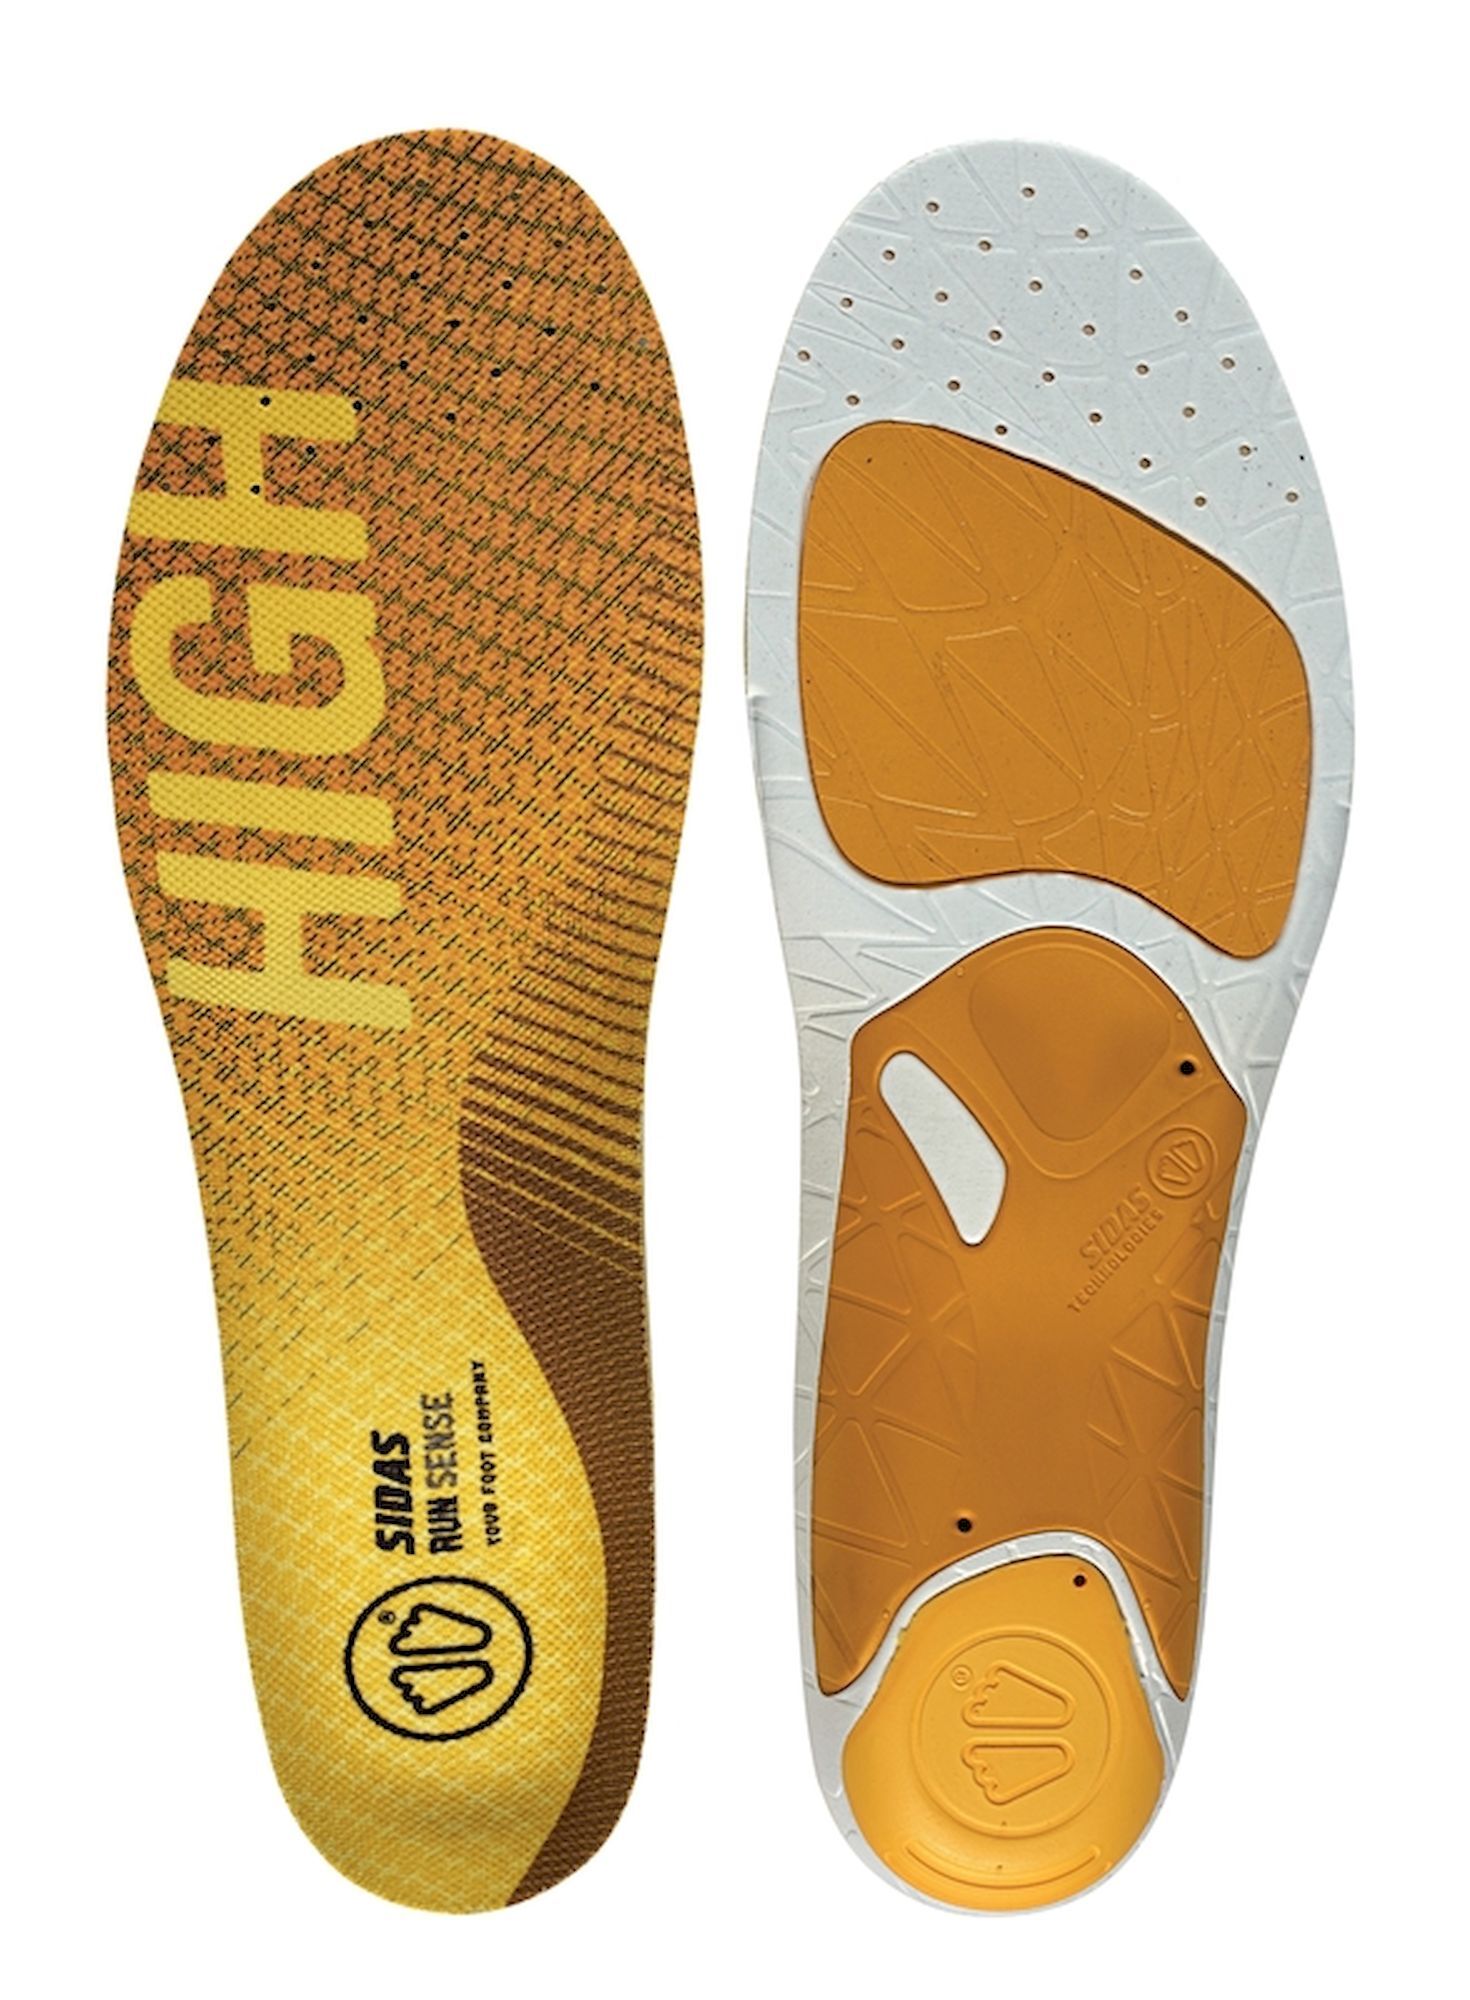 Sidas 3Feet Run Sense High - Solette per scarpe